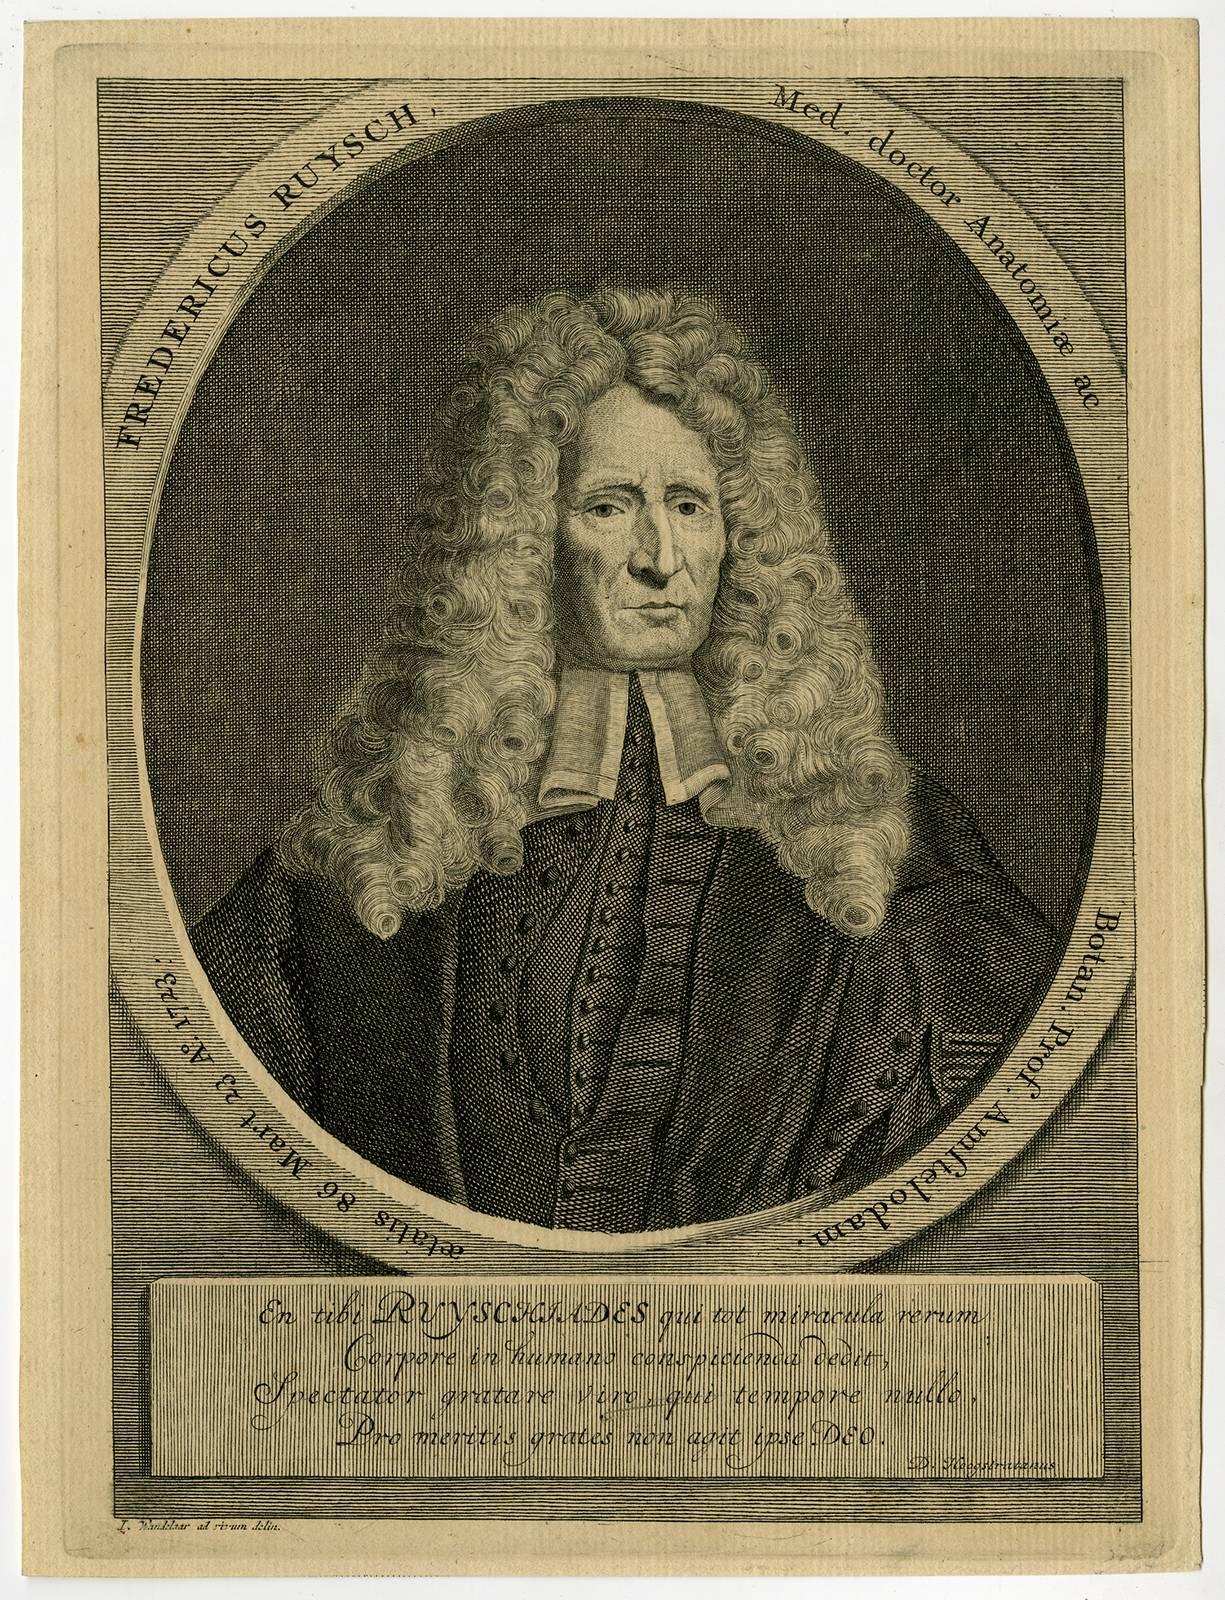 Jan Wandelaar Portrait Print - Fredericus Ruysch med. Doctor anatomiae [..]- Portrait of Frederick Ruysch [...]